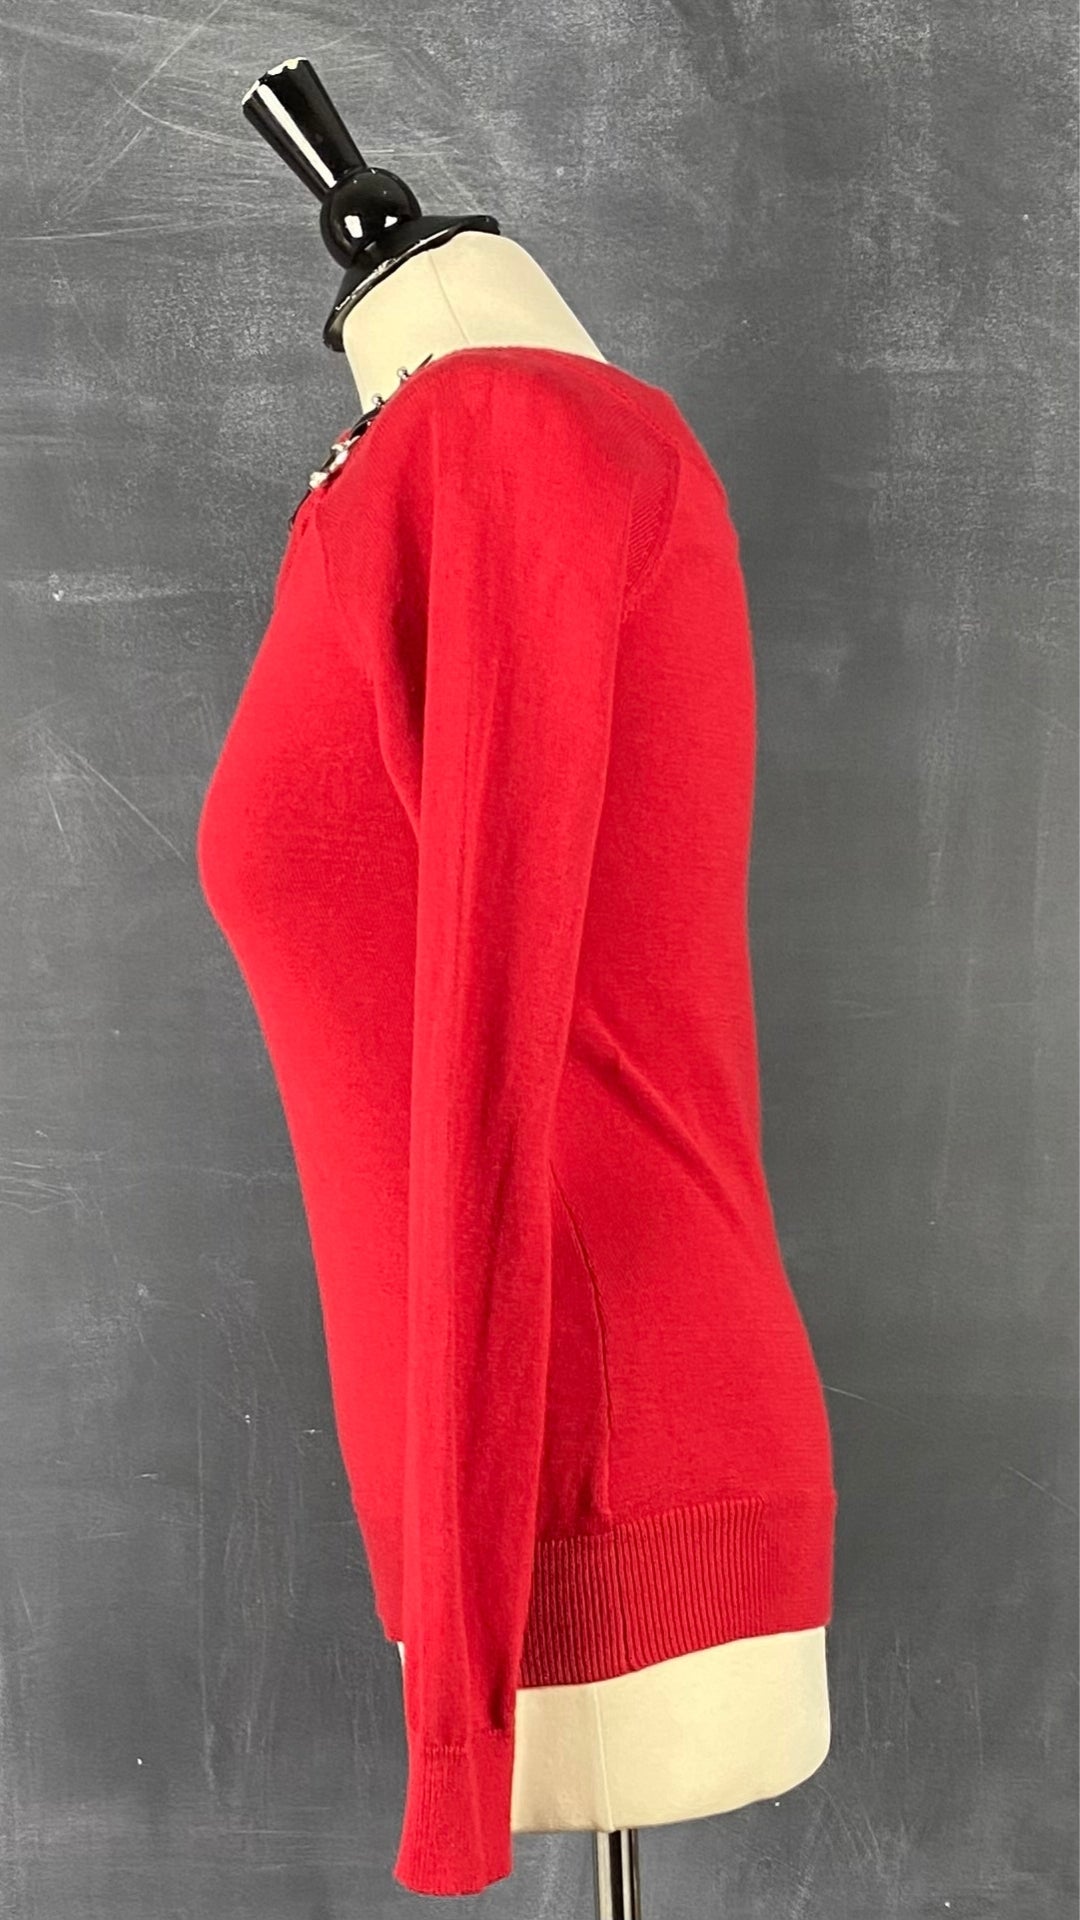 Chandail en tricot rouge col bateau Lauren Ralph Lauren, taille small. Vue de côté.